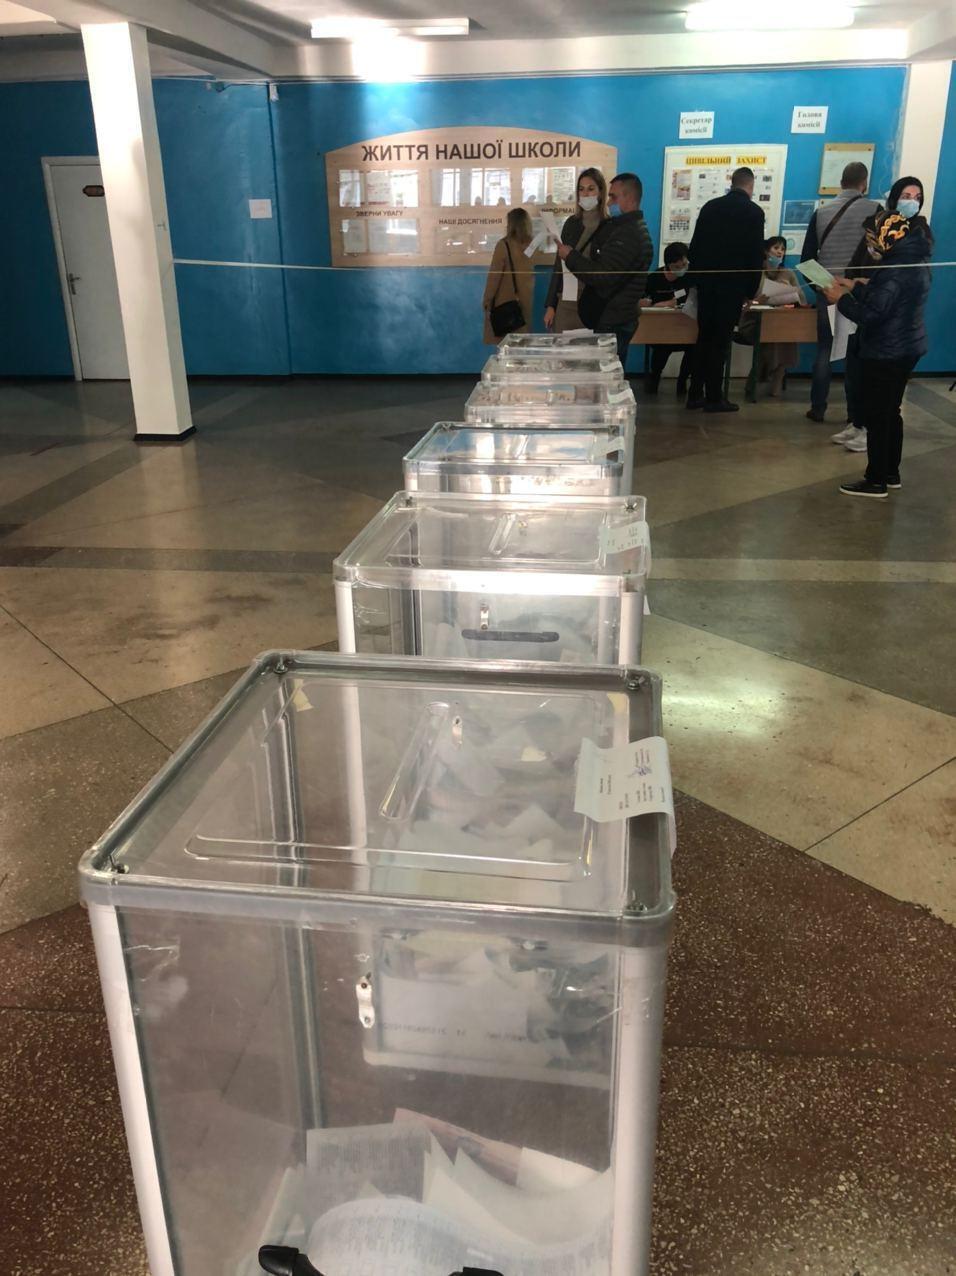 Нарушения на местных выборах в Украине: что происходило на избирательных участках. Фото и видео